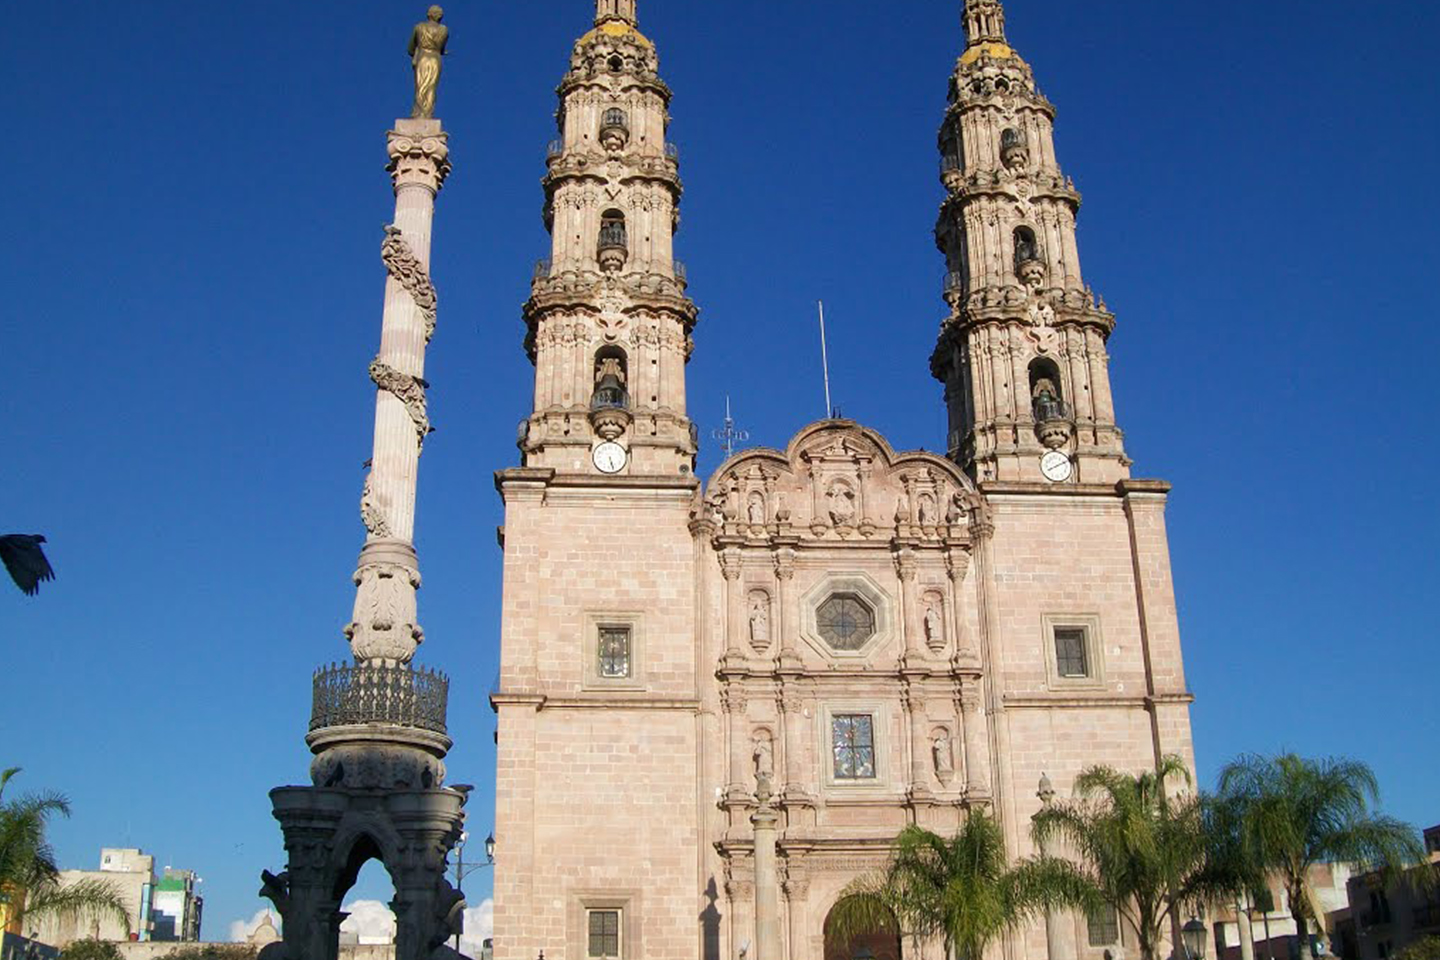 2. La basílica de Nuestra Señora de San Juan de los Lagos.